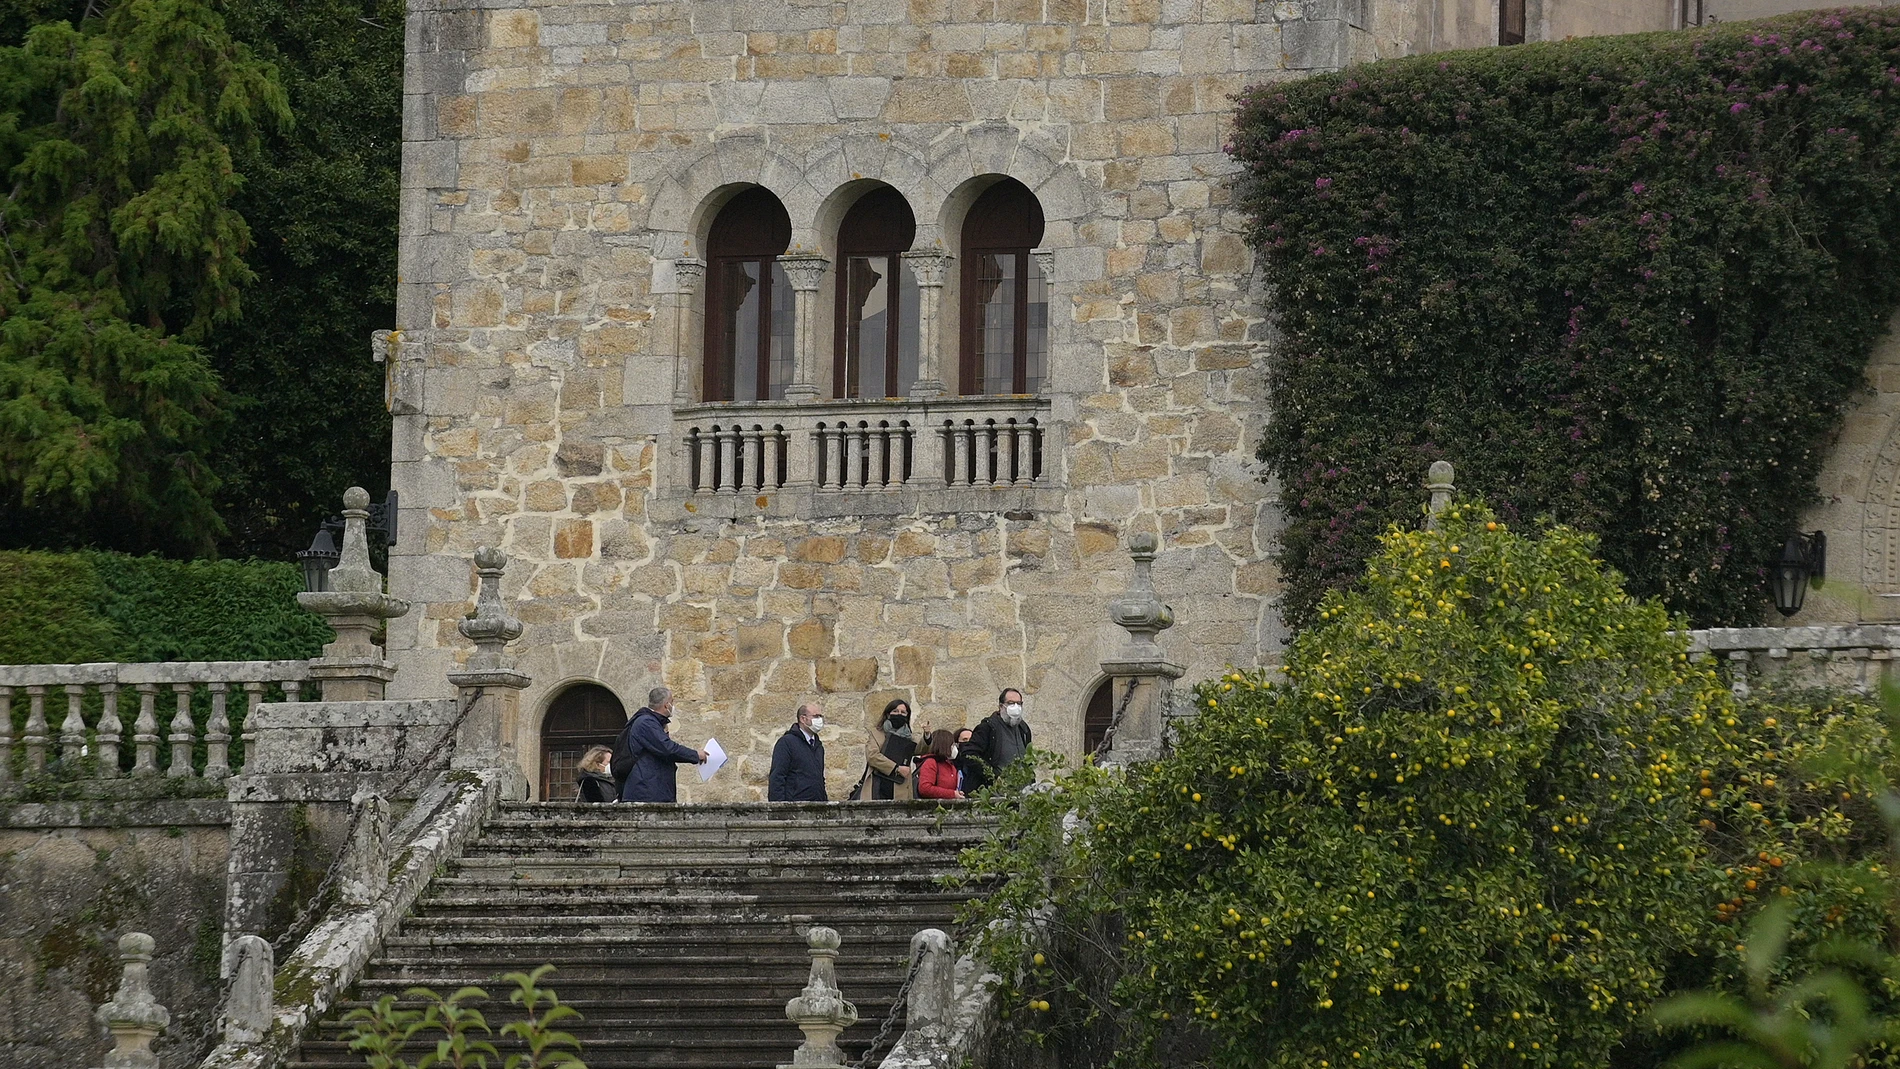 Técnicos de la Consejería de Cultura de la Xunta de Galicia realizan el inventario del Pazo de Meirás, bajo supervisión de la comitiva judicial, en Sada, La Coruña